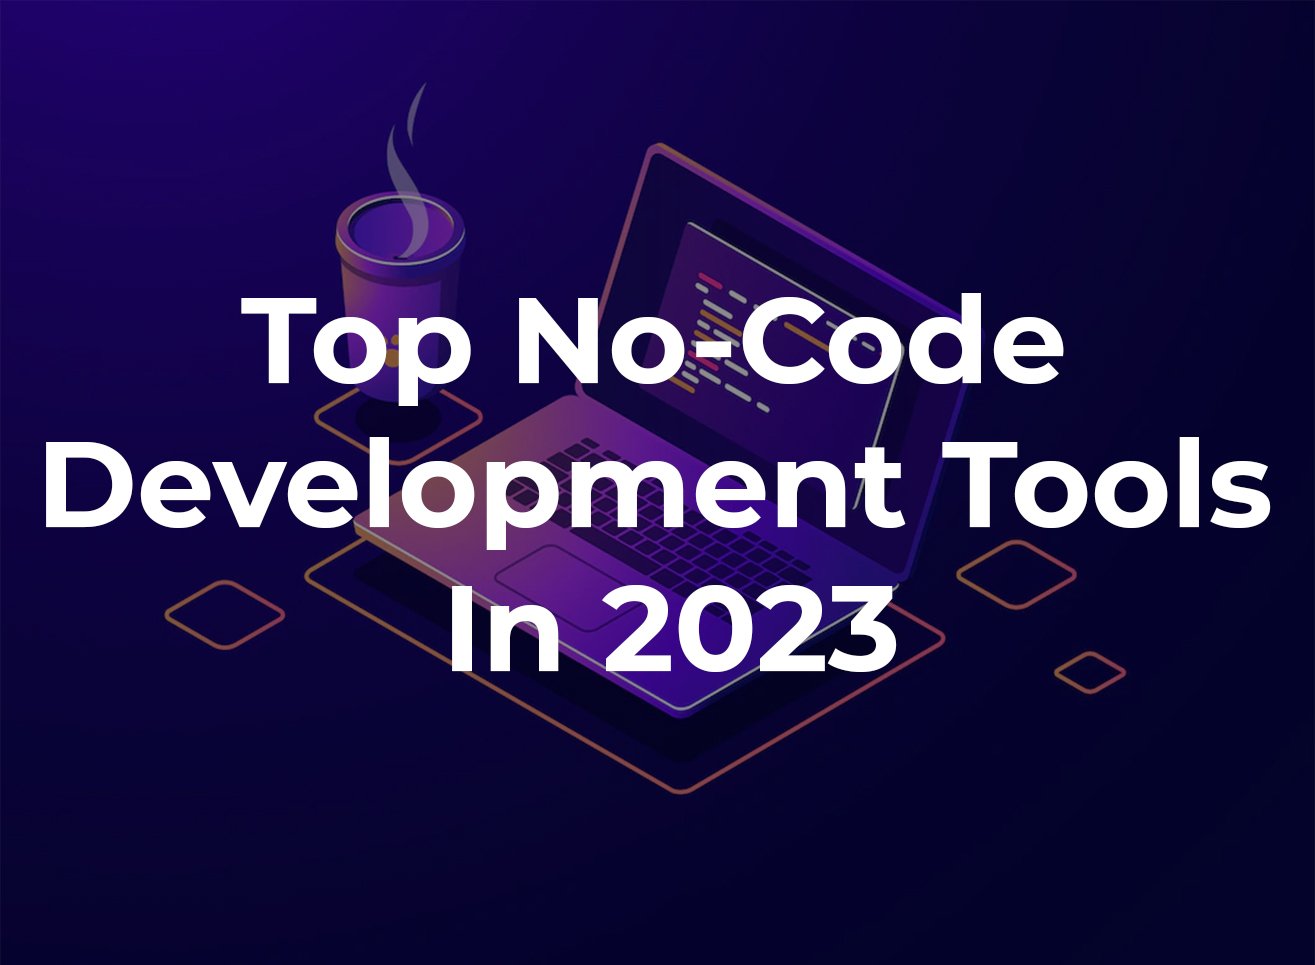 Top No-Code Development Tools In 2023